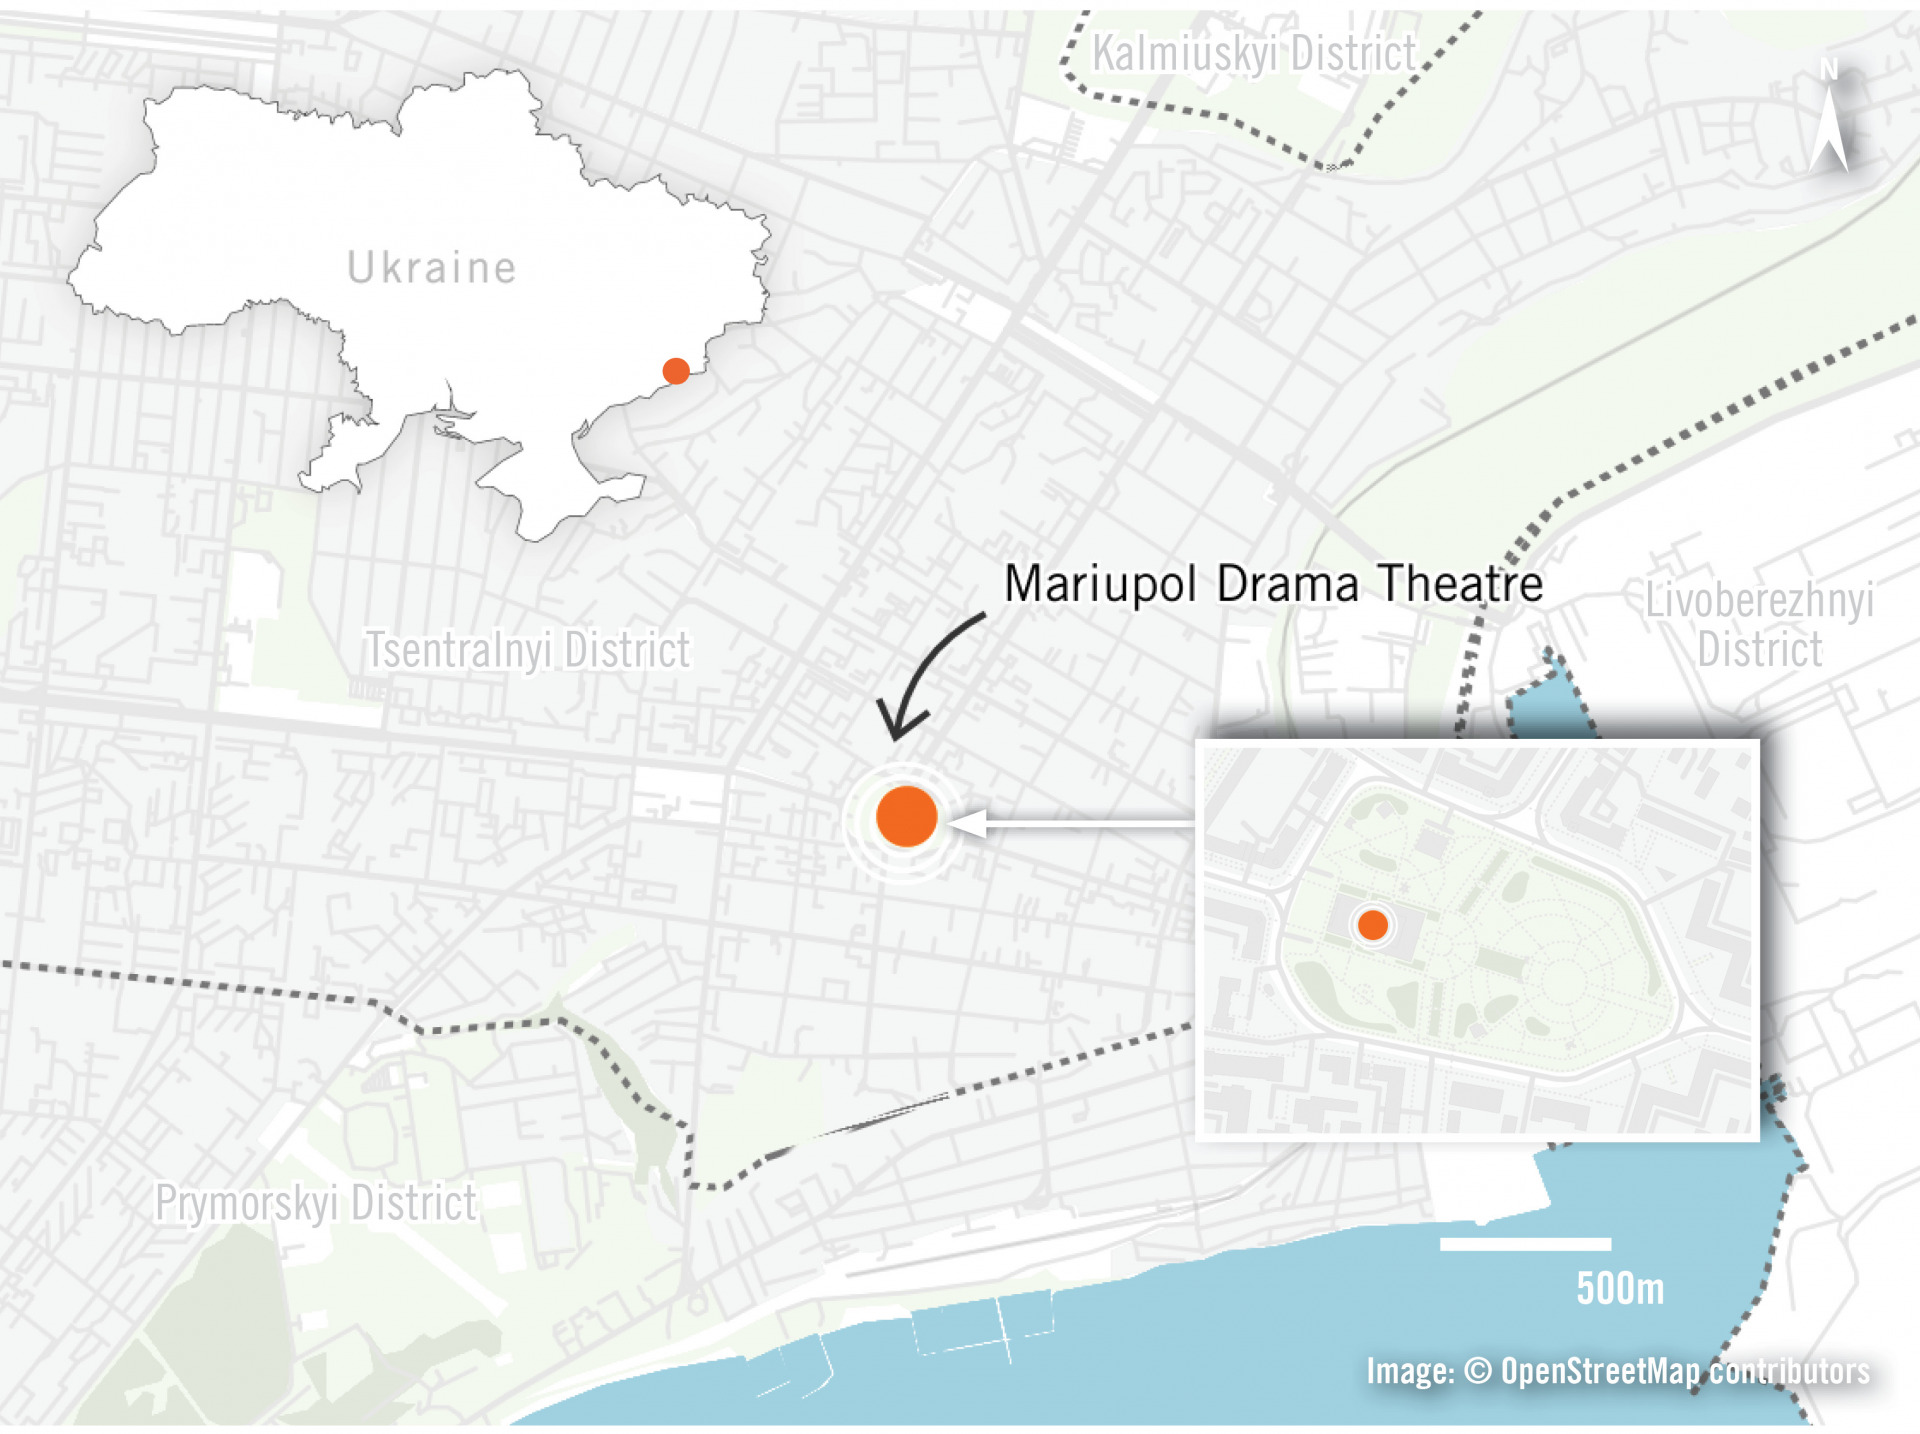 標示戲劇院位置的馬里烏波爾地圖，以及標示馬里烏波爾位置的烏克蘭地圖。 © OpenStreetMap Contributors